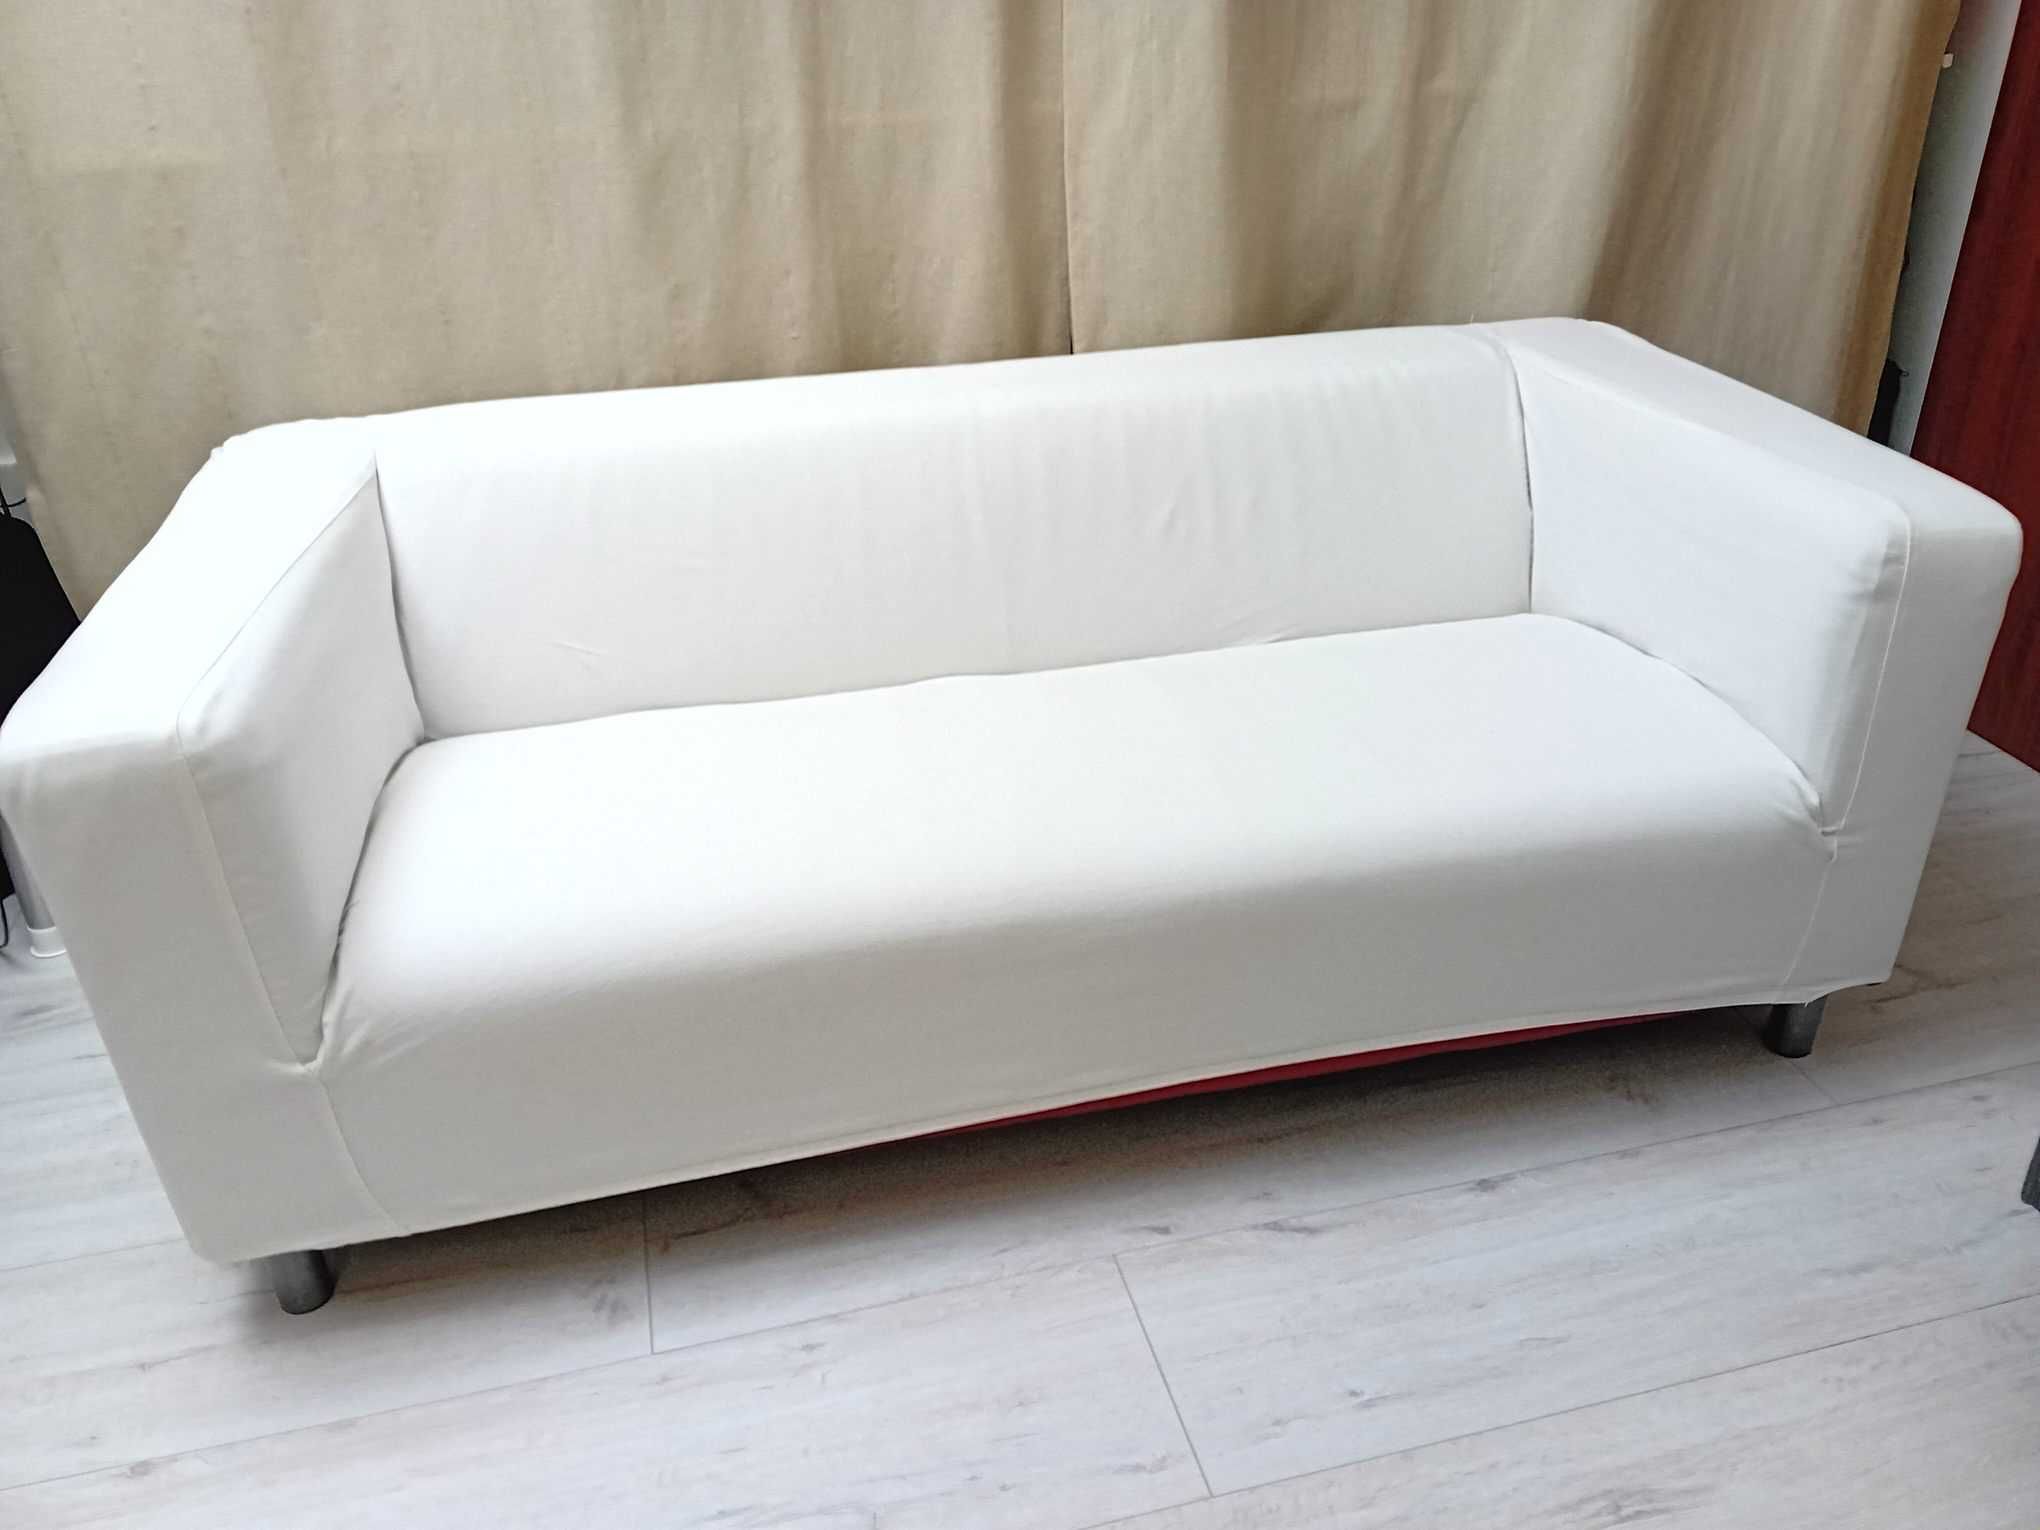 Sofa Ikea Klippan skóra naturalna czerwona + 4 pokrowce (trzy kolory)